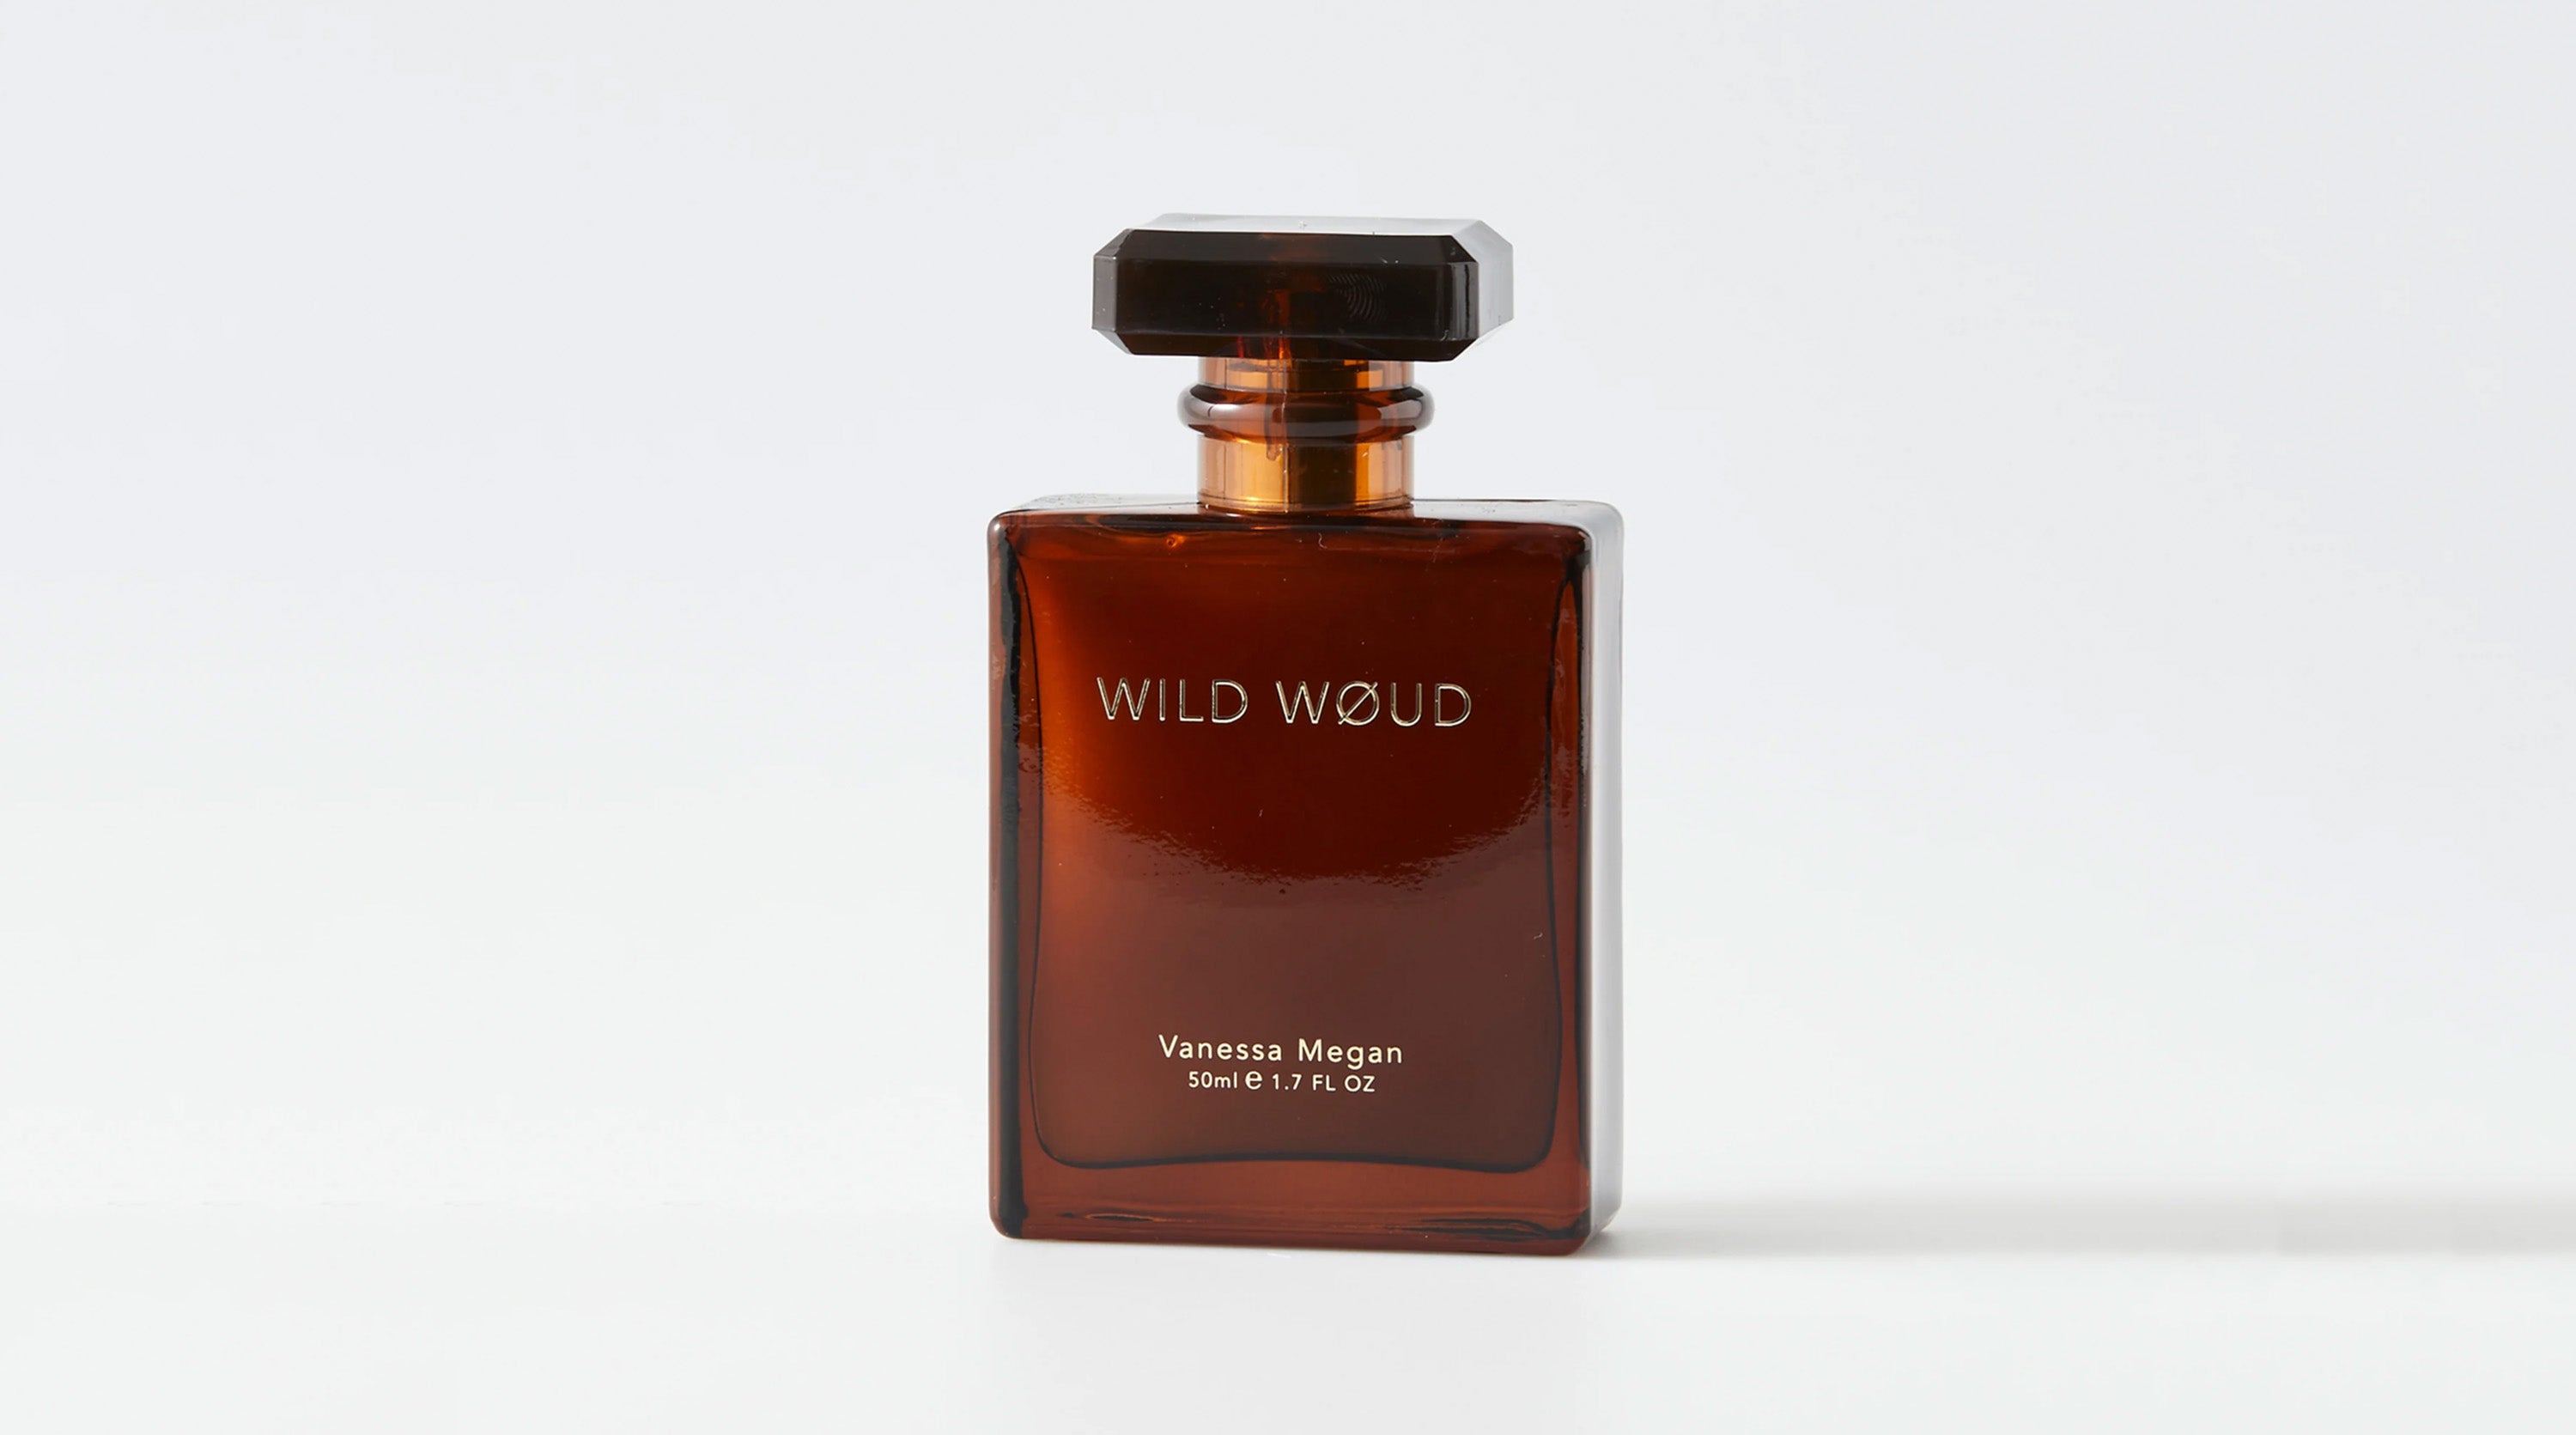 Wild Woud by Vanessa Megan 100% Natural Mood Enhancing Perfume at Sensoriam